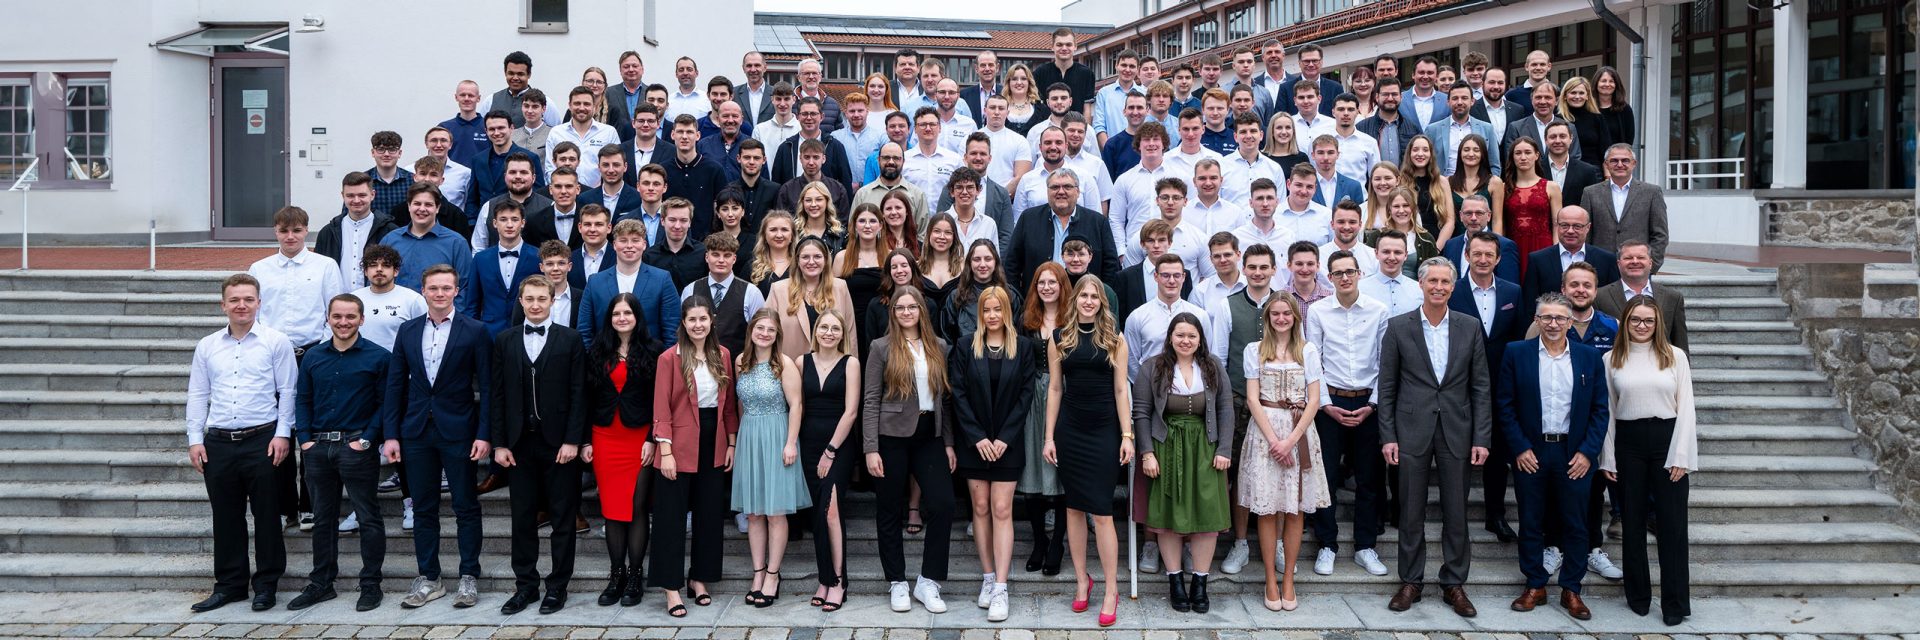 106 junge Menschen erhielten am Dienstag die Abschlusszeugnisse ihrer Berufsausbildung im BMW Group Werk Dingolfing.